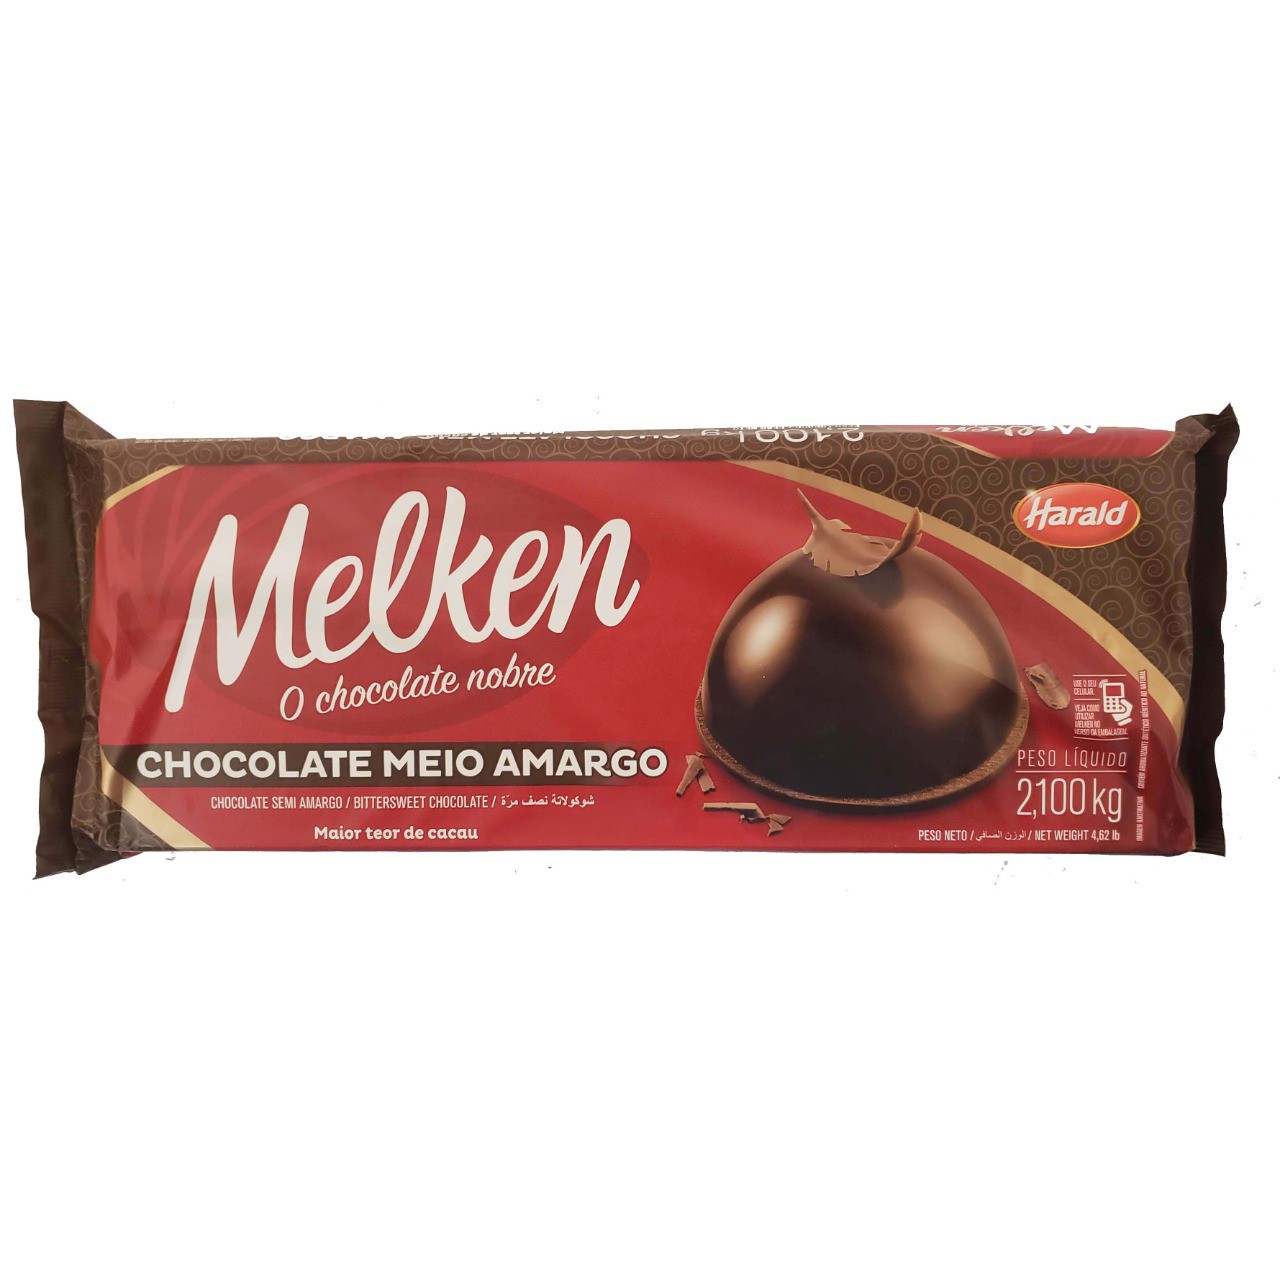 Chocolate Meio Amargo Melken Harald - 2,100kg -